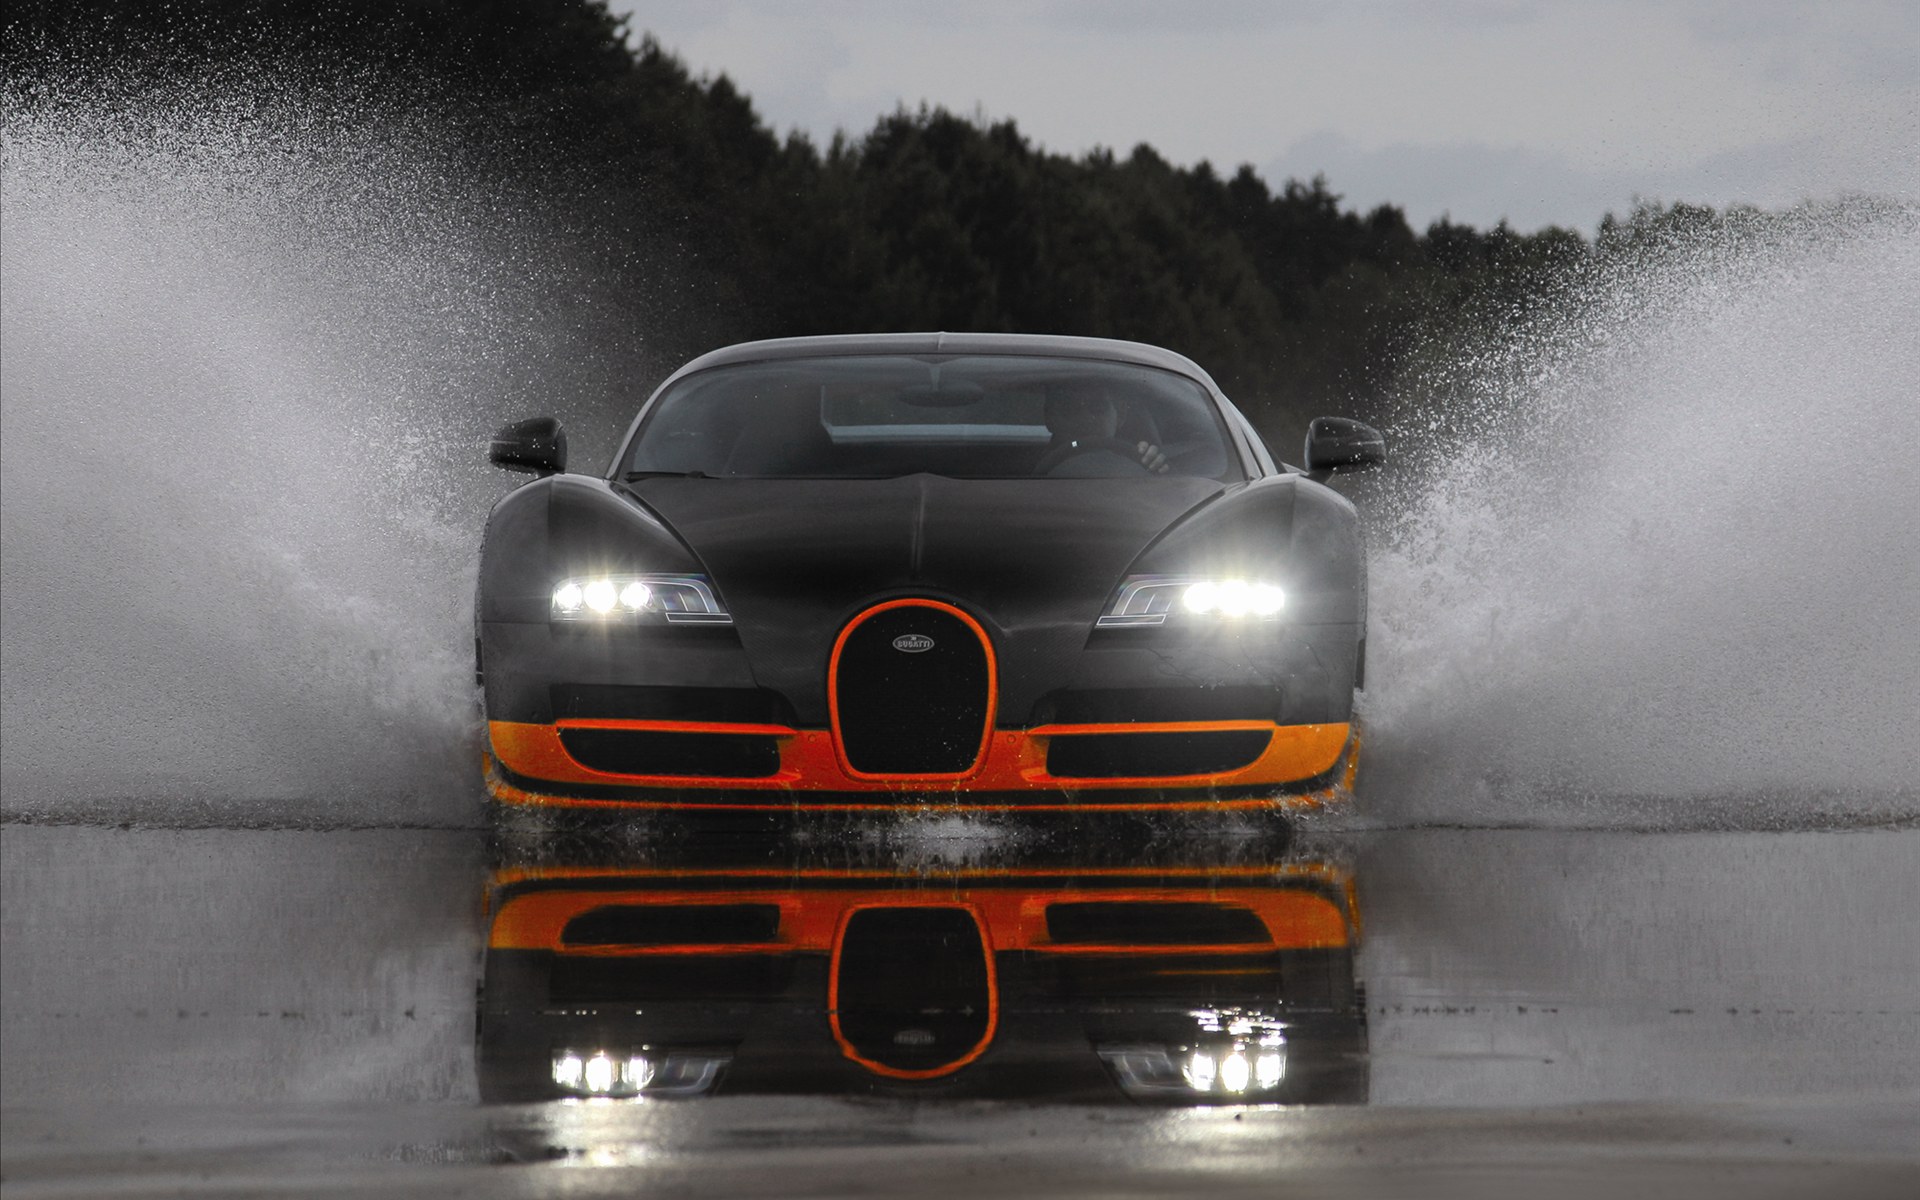 Bugatti Veyron(ӵ) 16.4 Super Sports Car 2011(ֽ16)